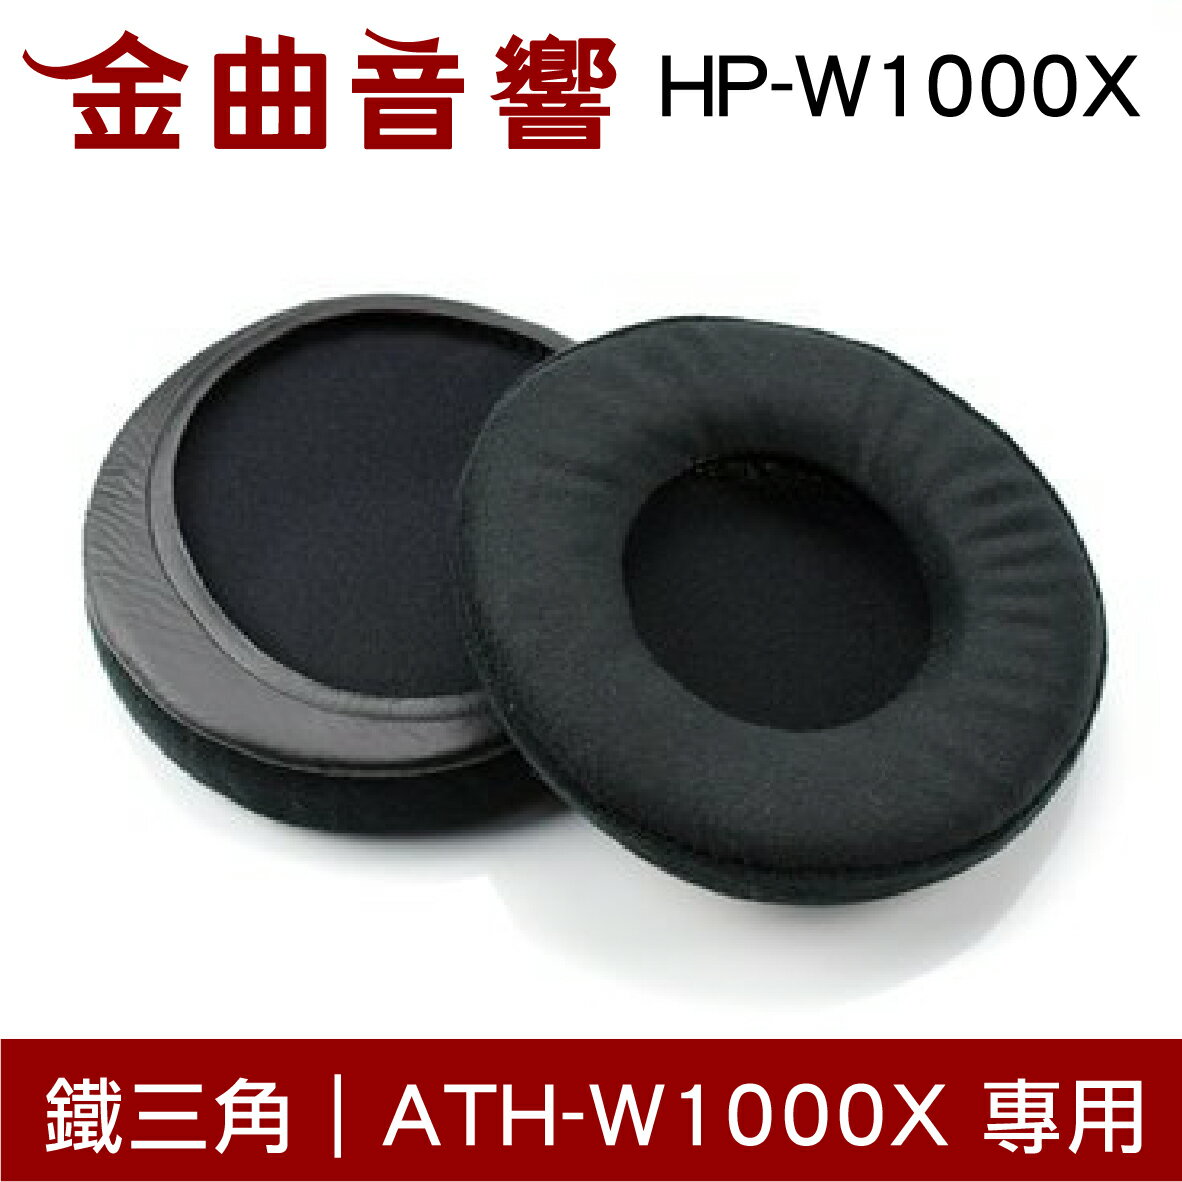 鐵三角 HP-W1000X 替換耳罩 ATH-W1000X 專用 | 金曲音響